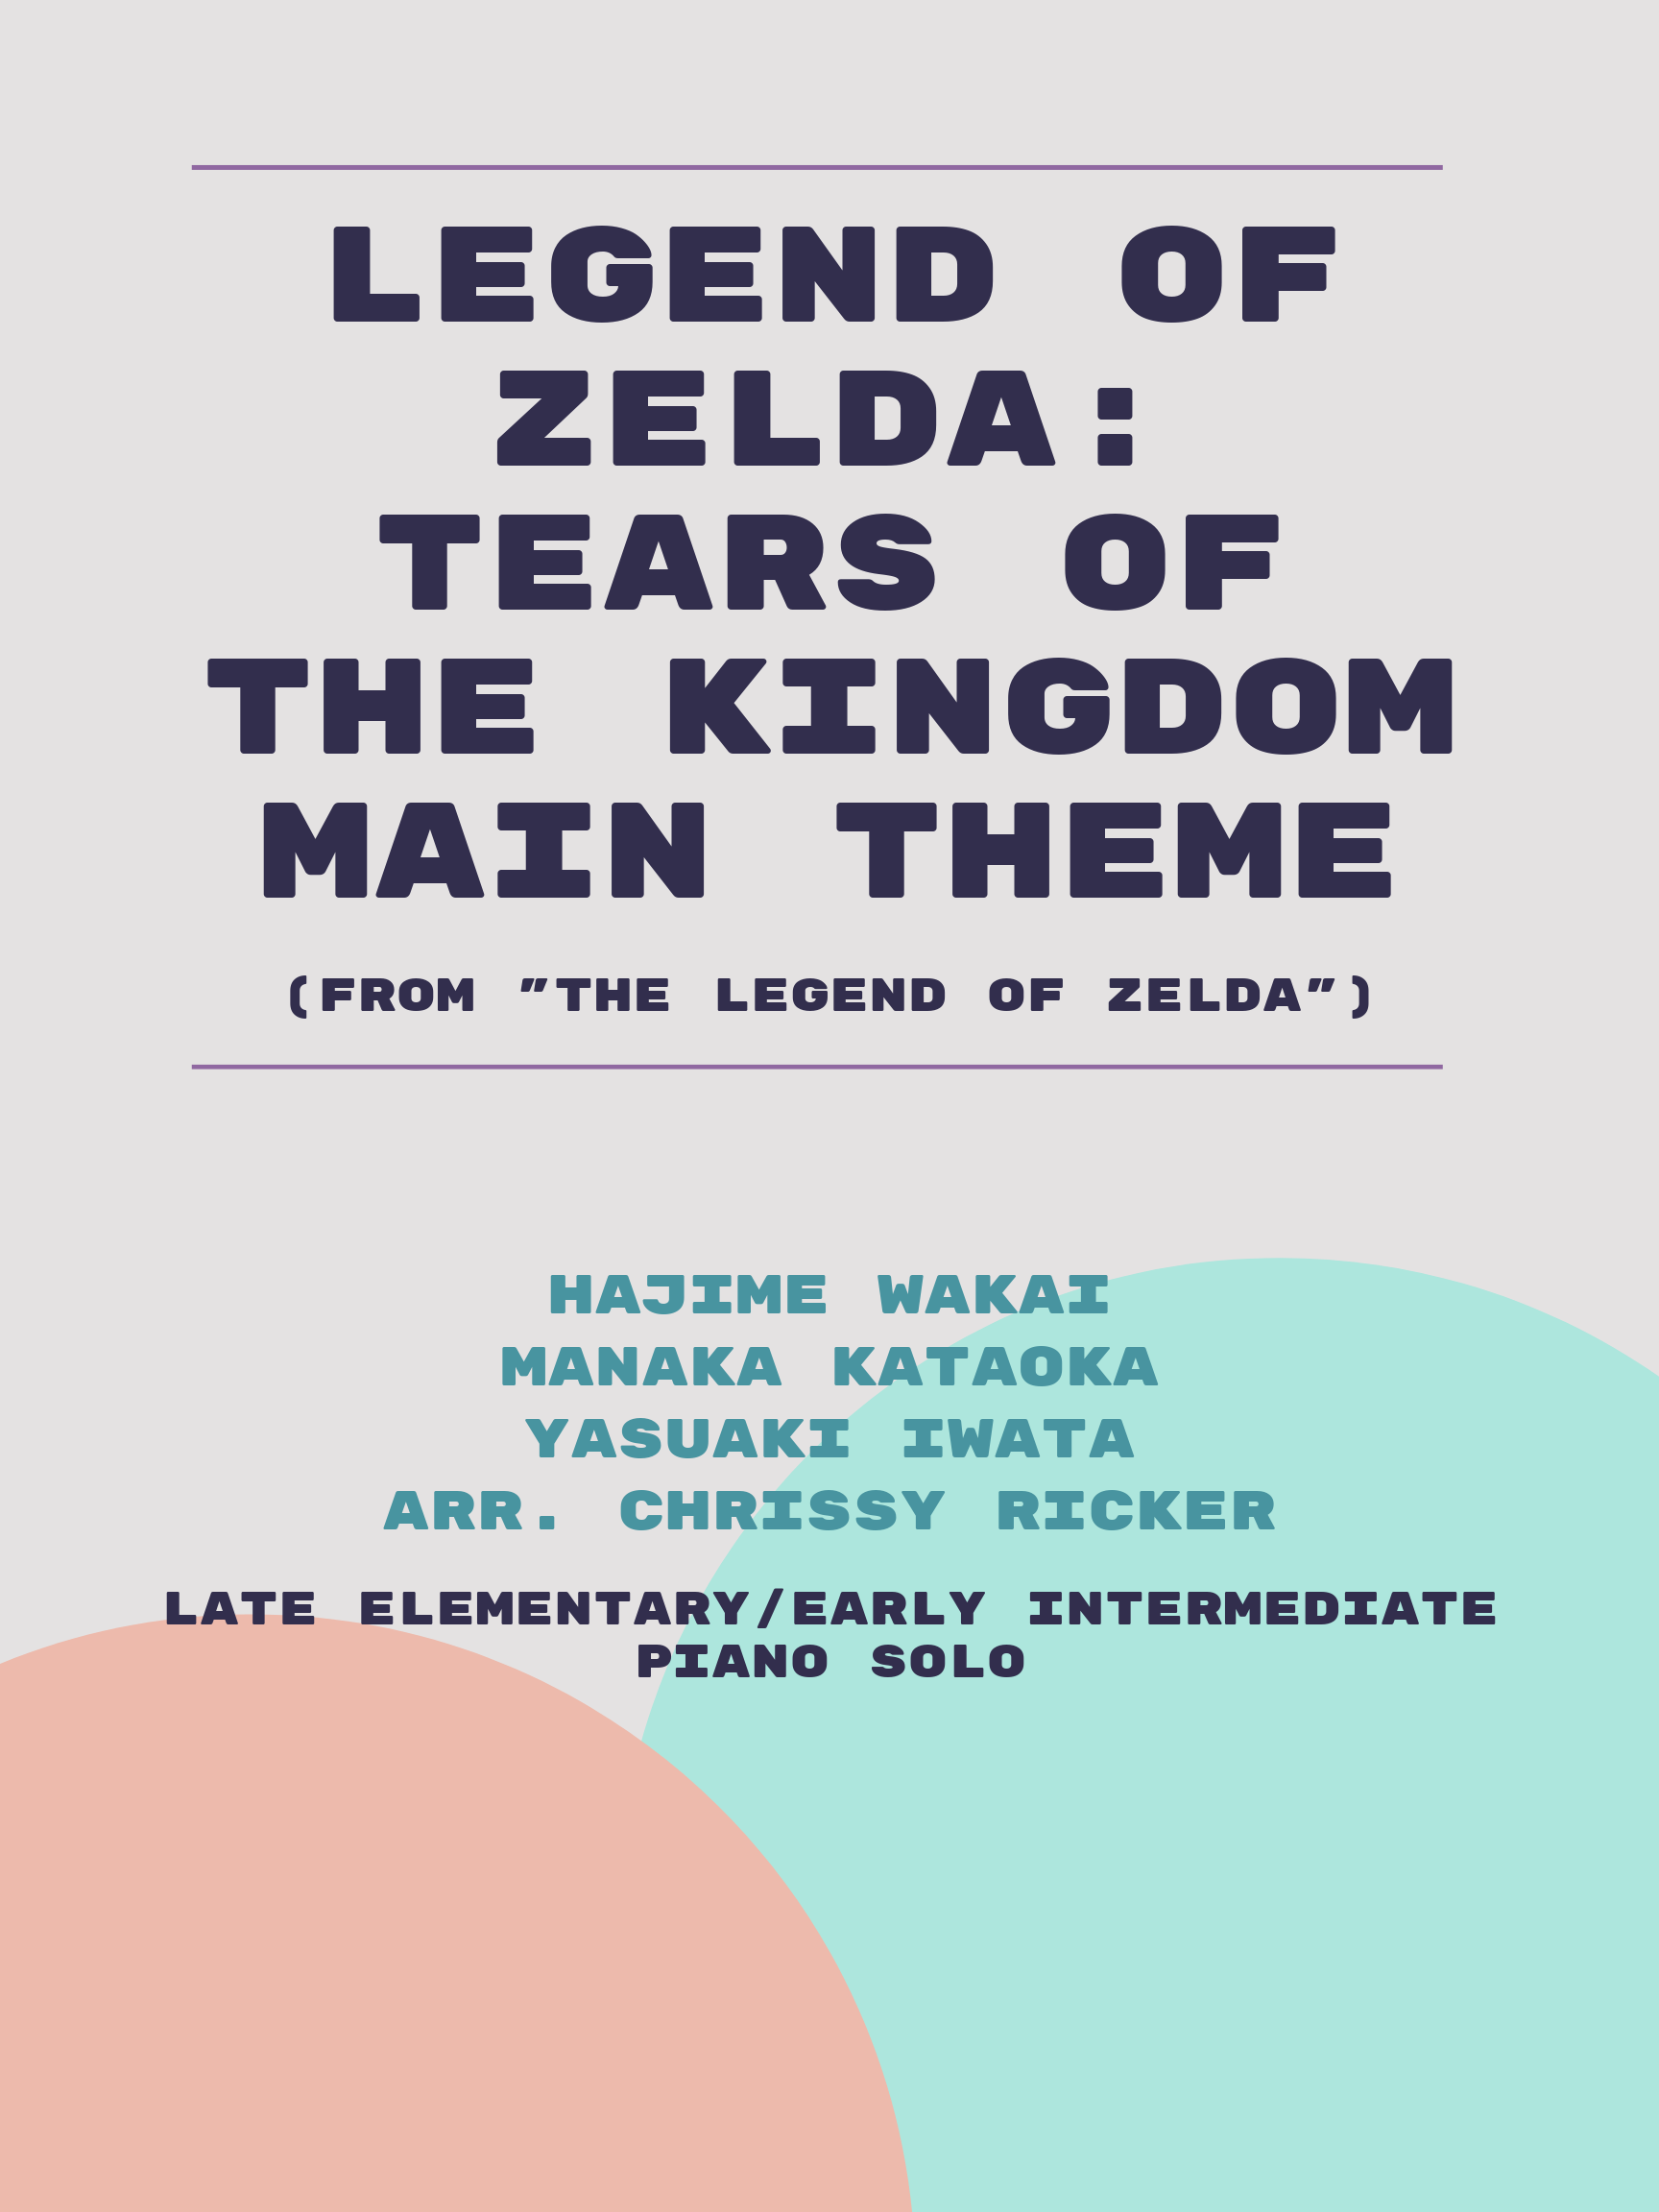 Legend of Zelda: Tears of the Kingdom Main Theme by Hajime Wakai, Manaka Kataoka, Yasuaki Iwata